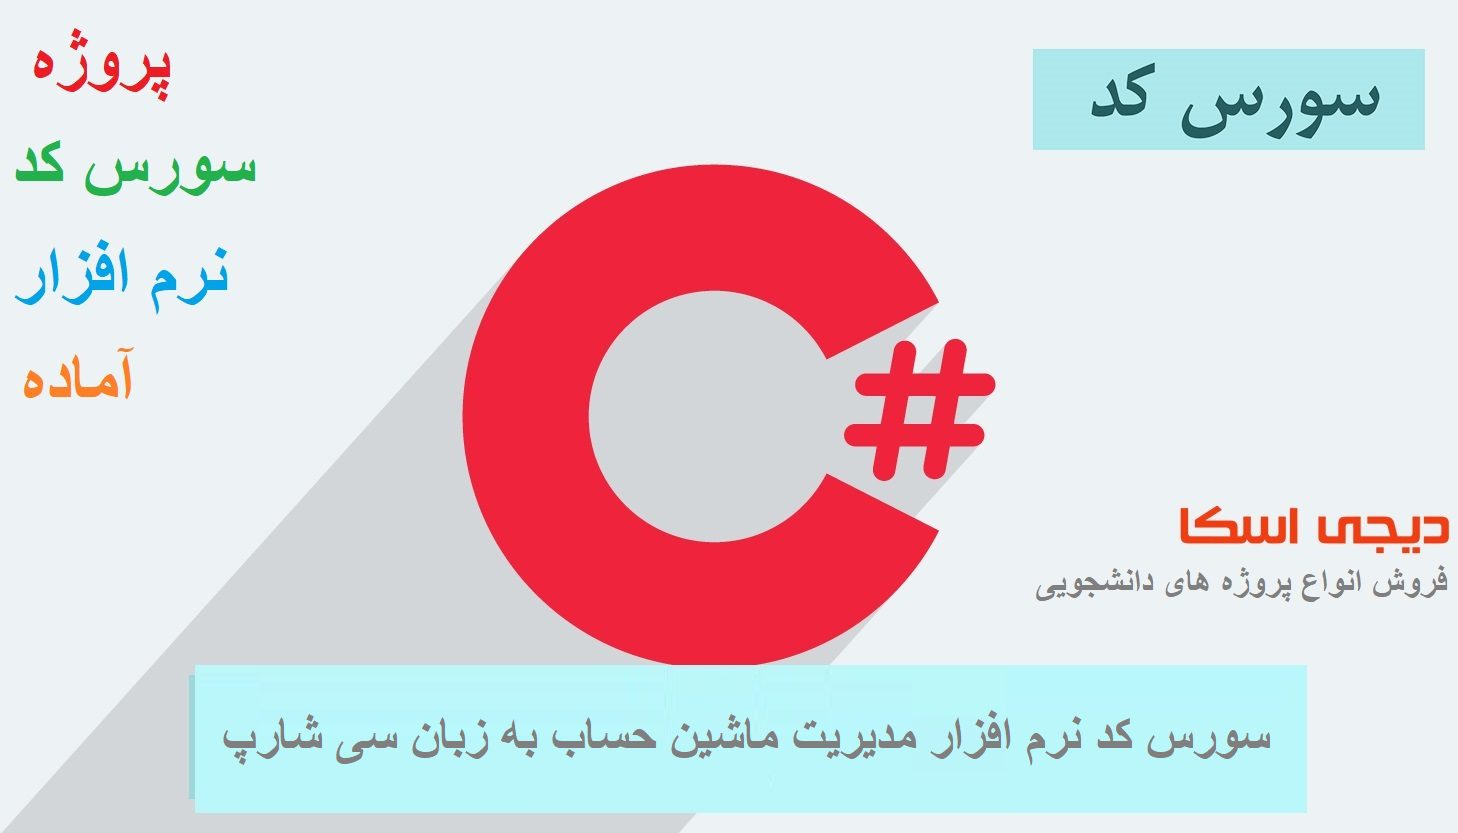 سورس کد نرم افزار مدیریت ماشین حساب به زبان سی شارپ #c